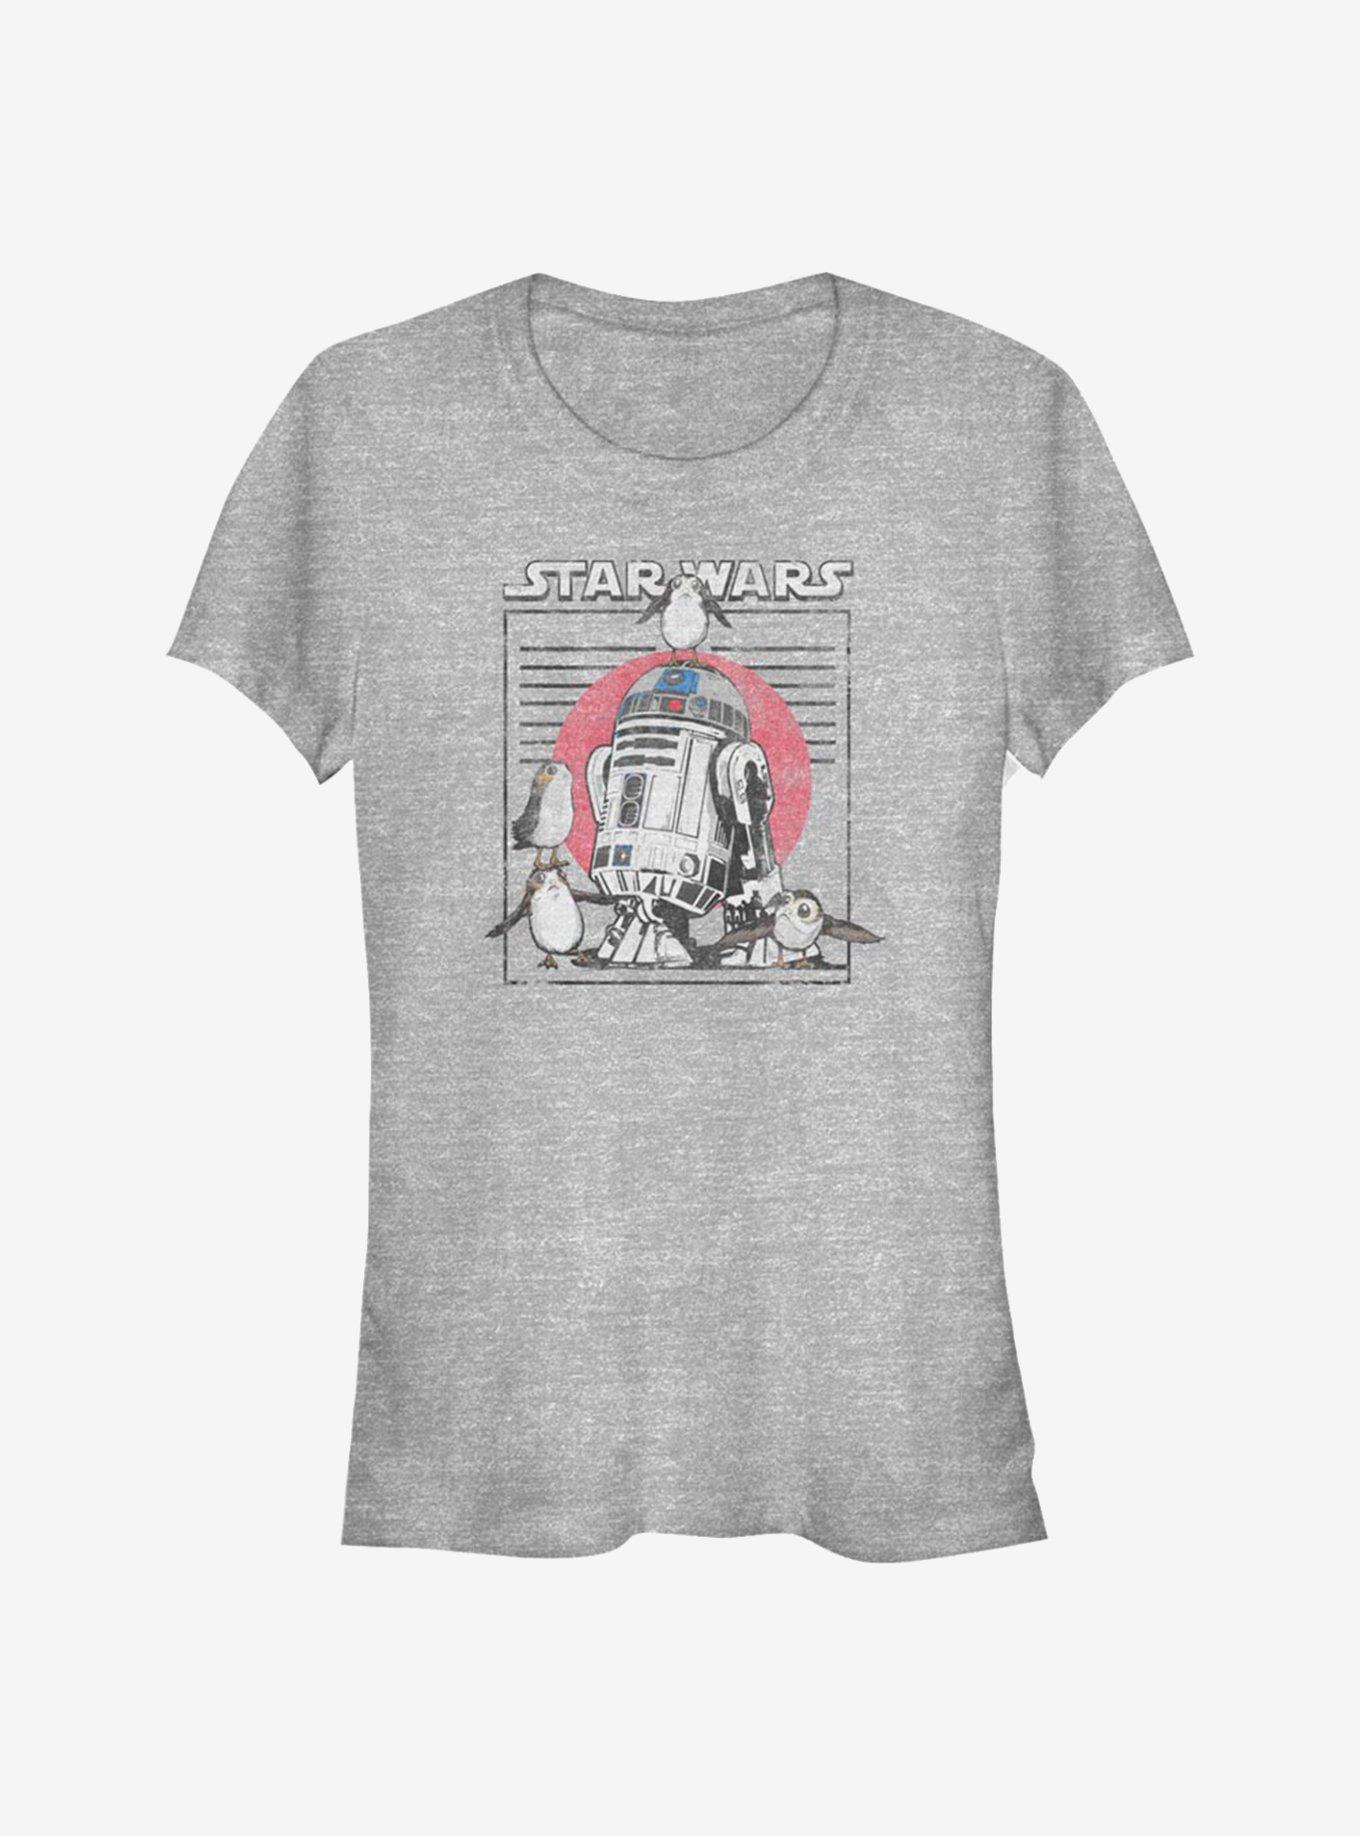 Star Wars: The Last Jedi New Friends Girls T-Shirt